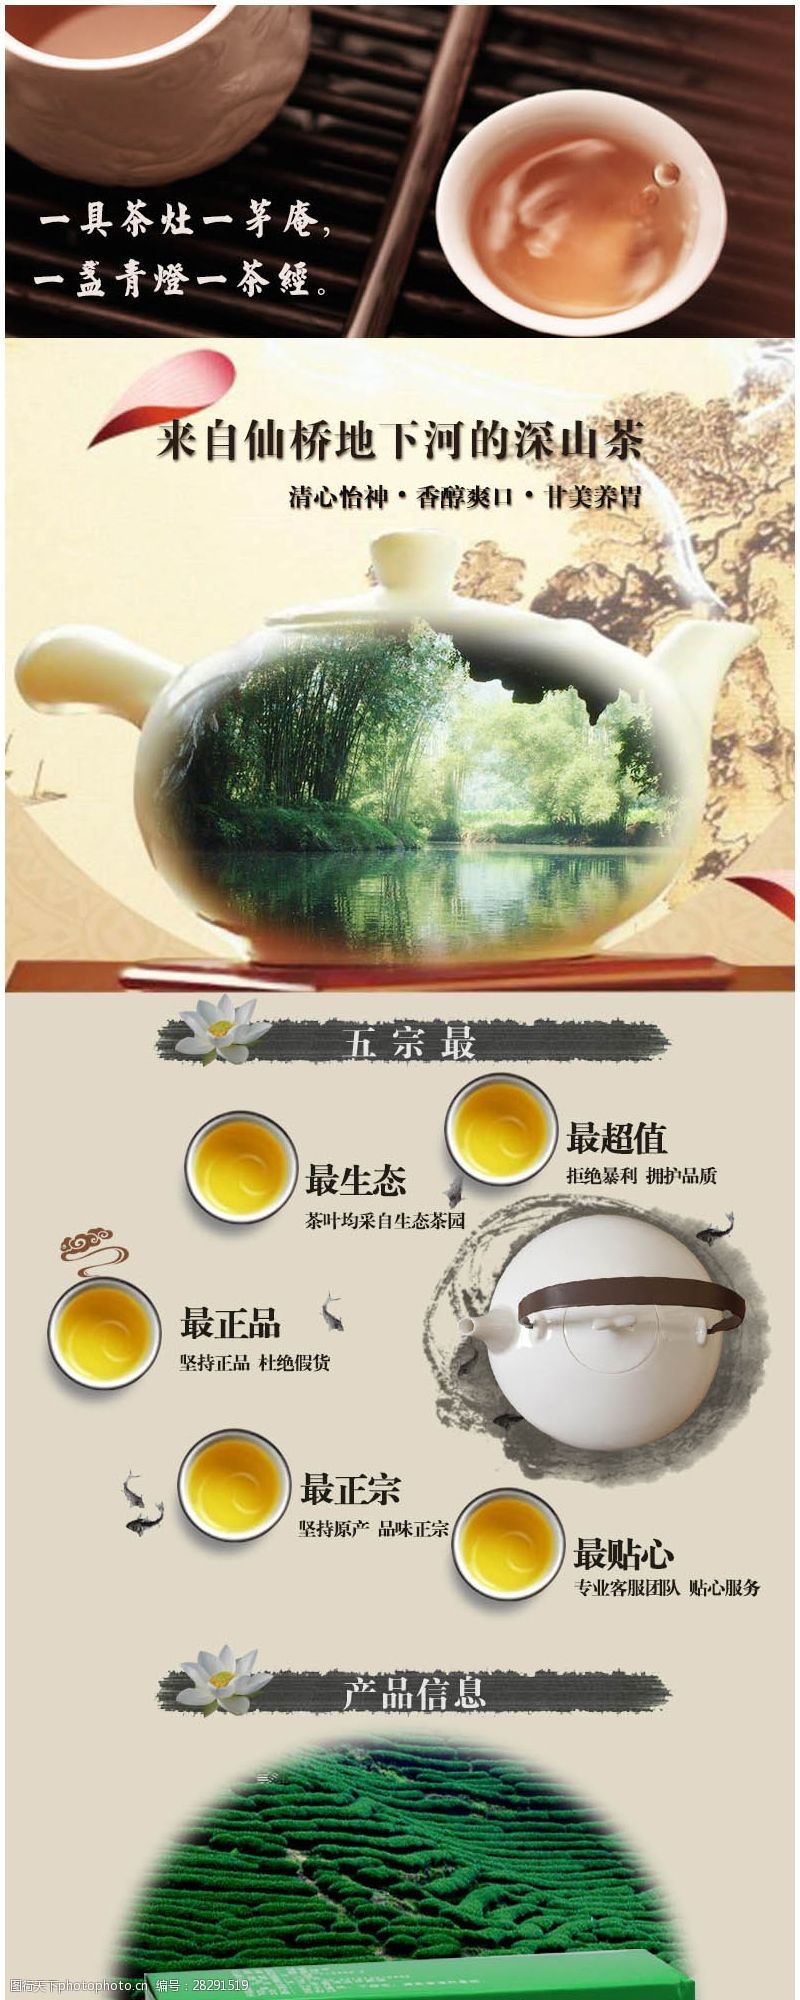 中国风详情页淘宝茶叶店详情页模板